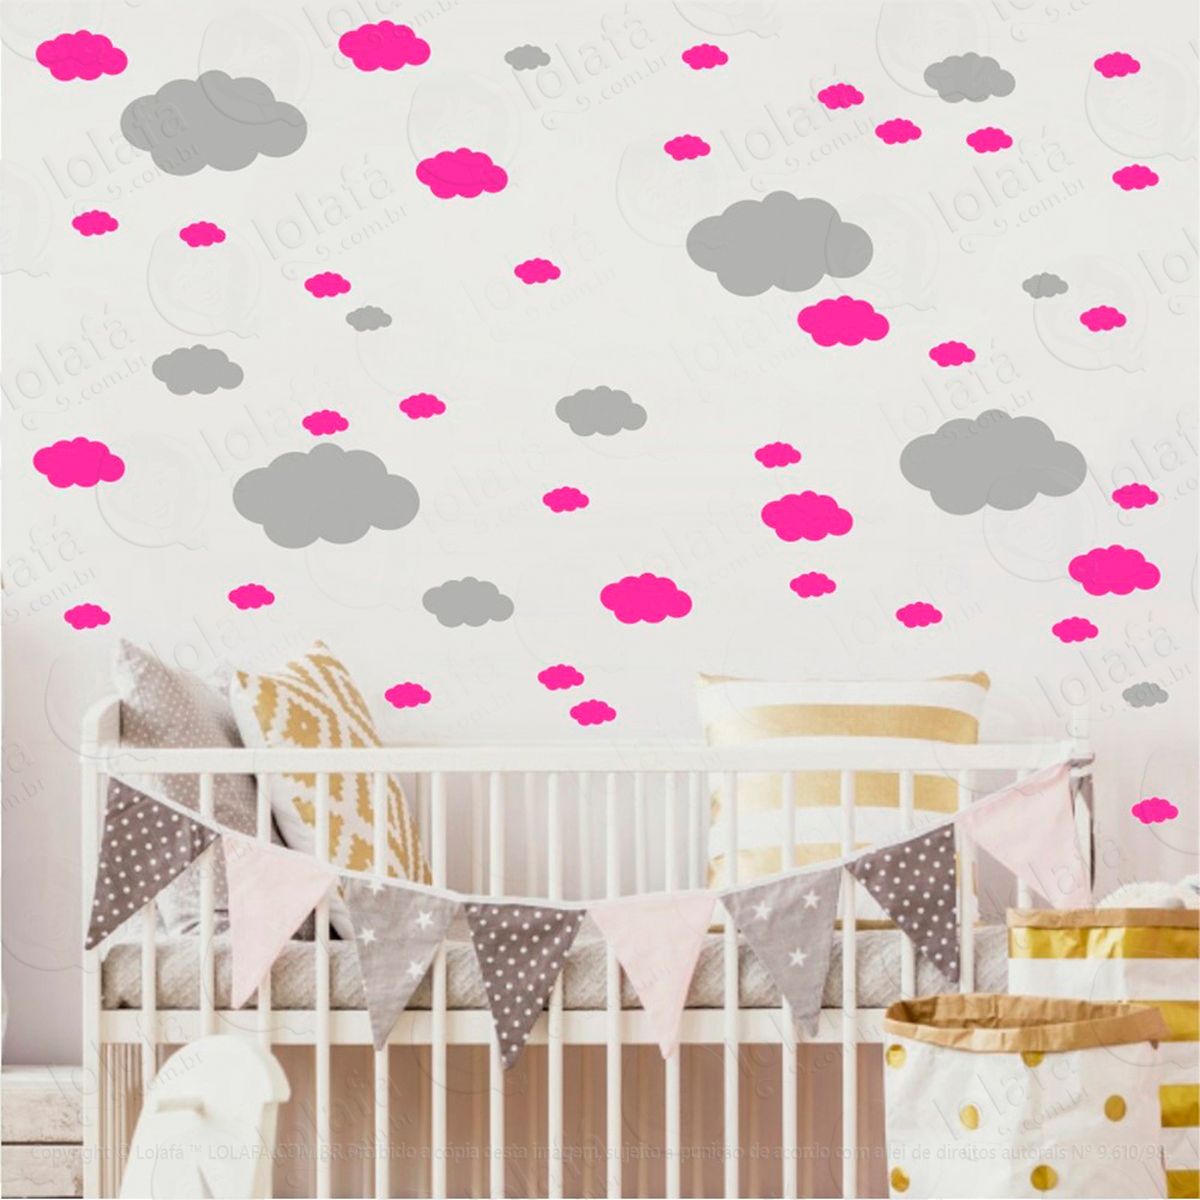 adesivos nuvens 62 peças adesivos para quarto de bebê infantil - mod:821